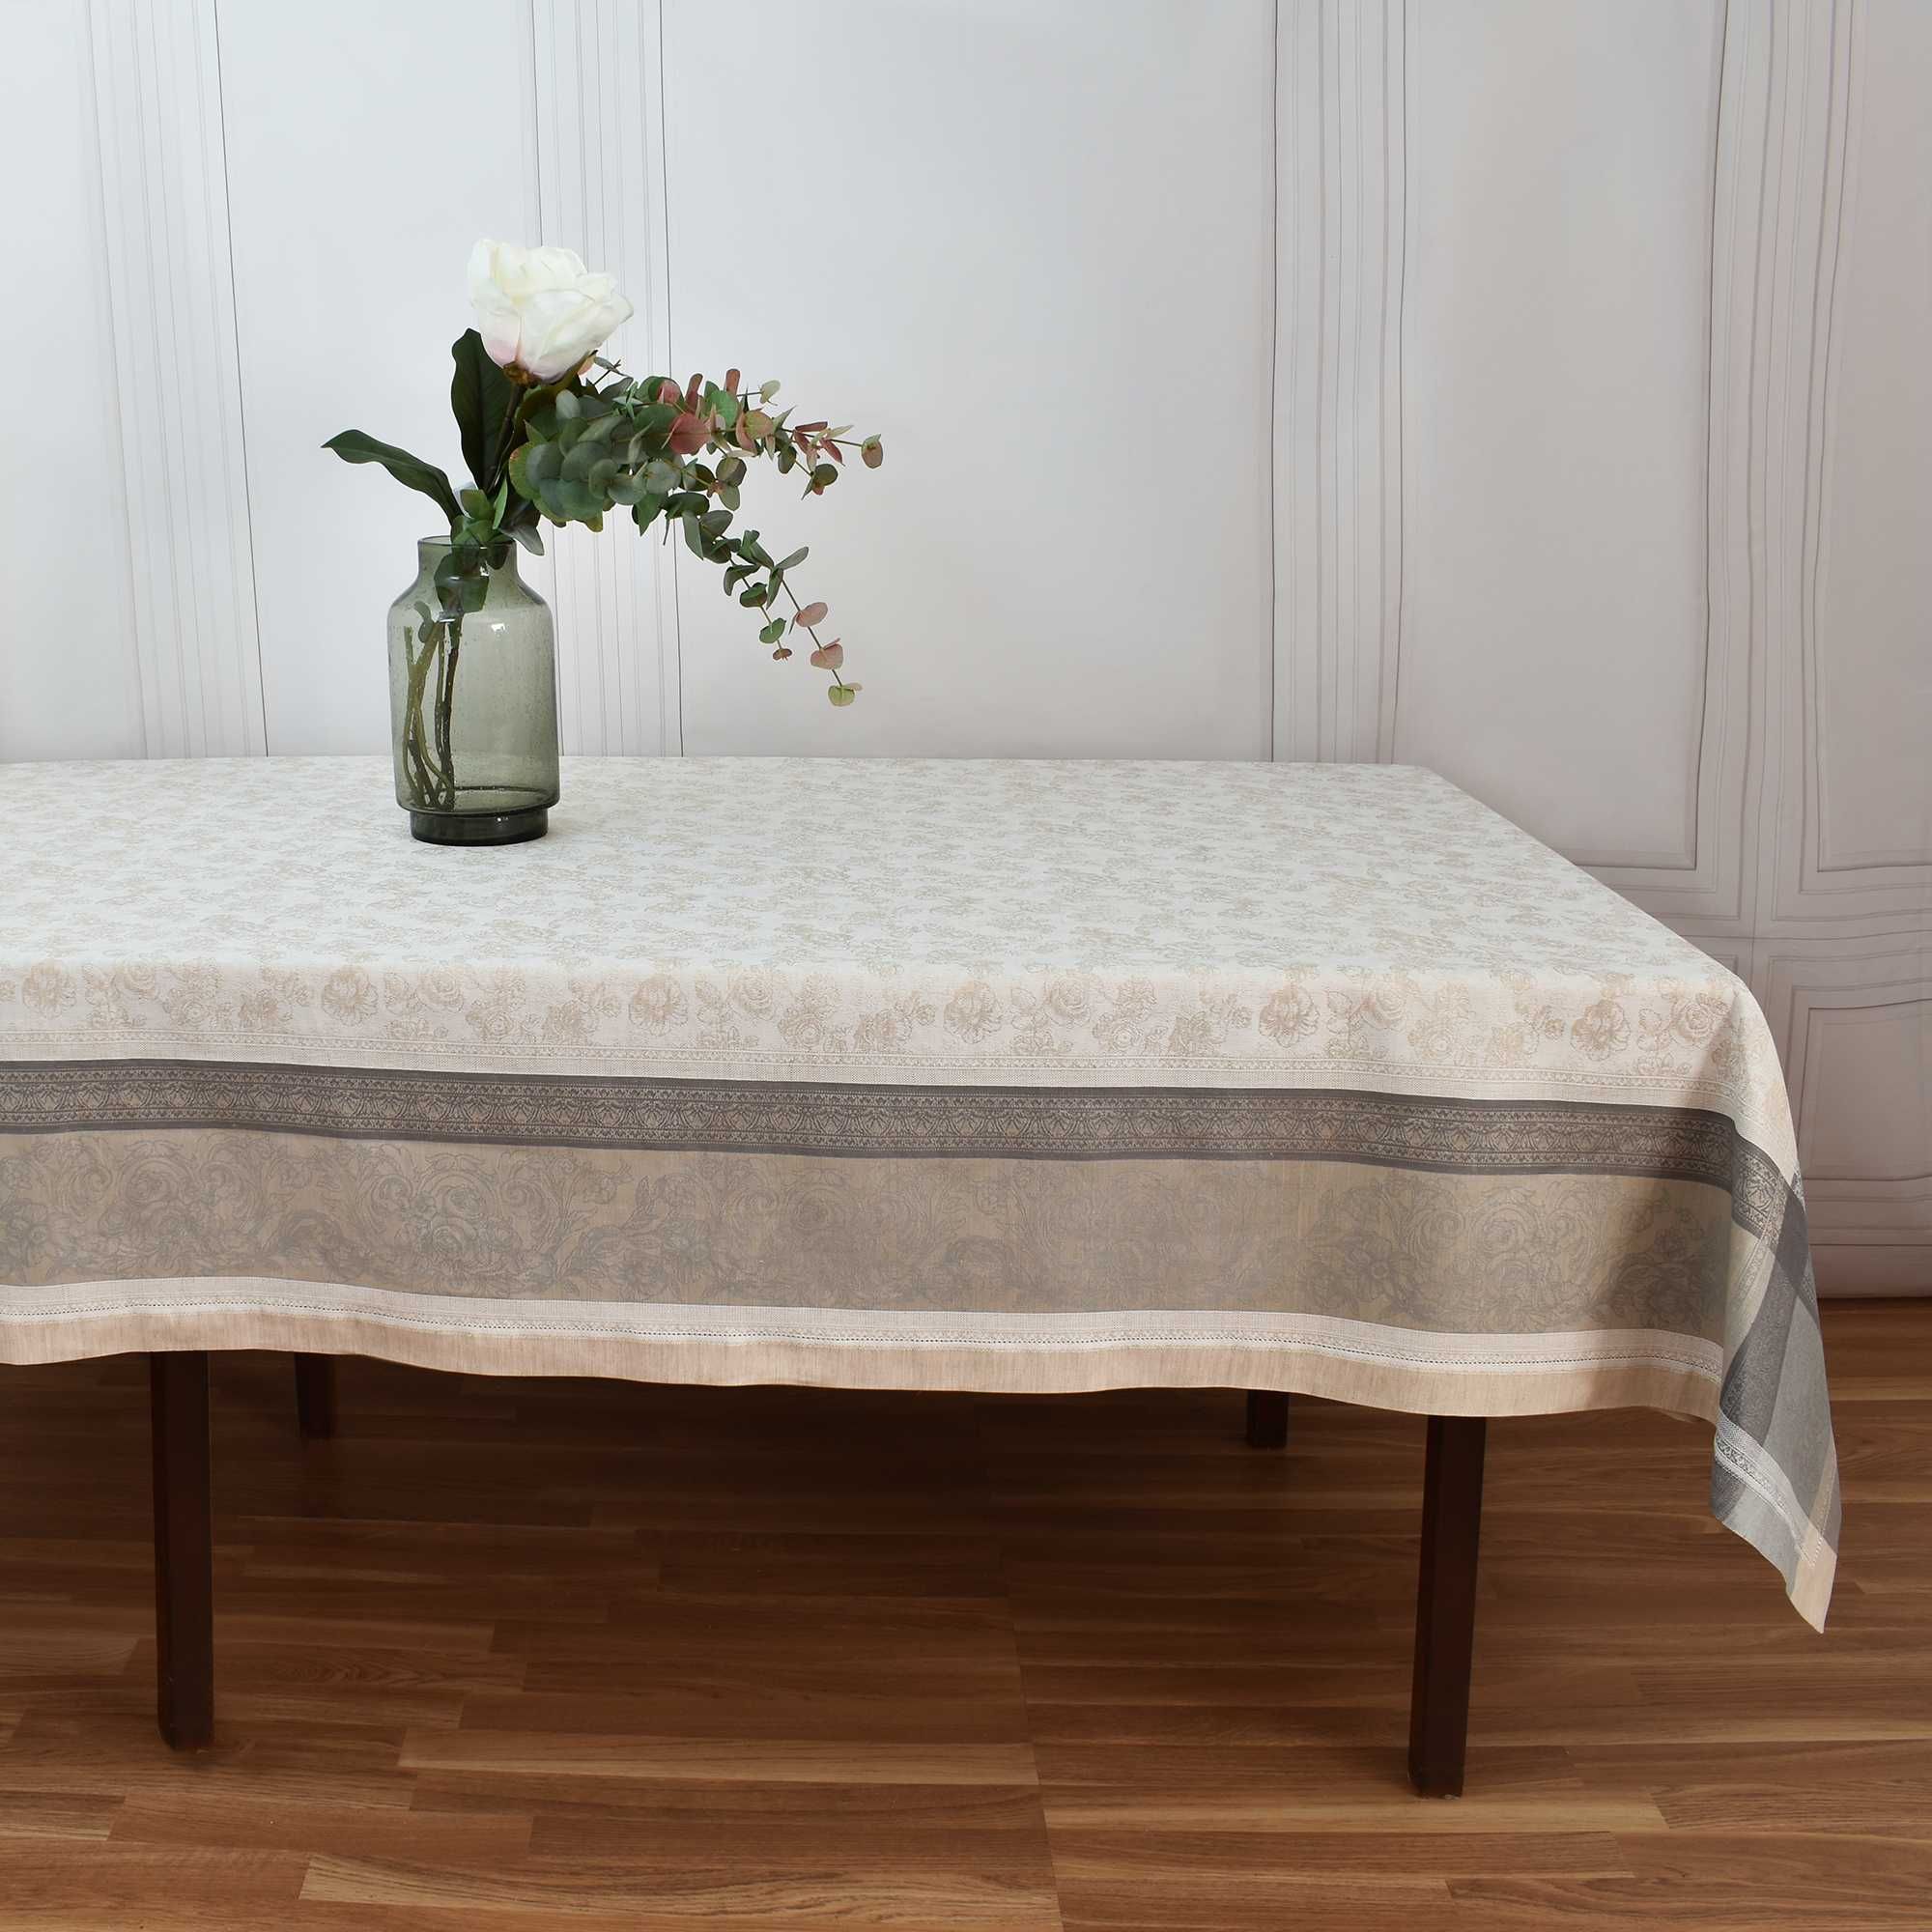 Toalha mesa Jacquard Com flores, rectangular 170x250 cm, Algodão